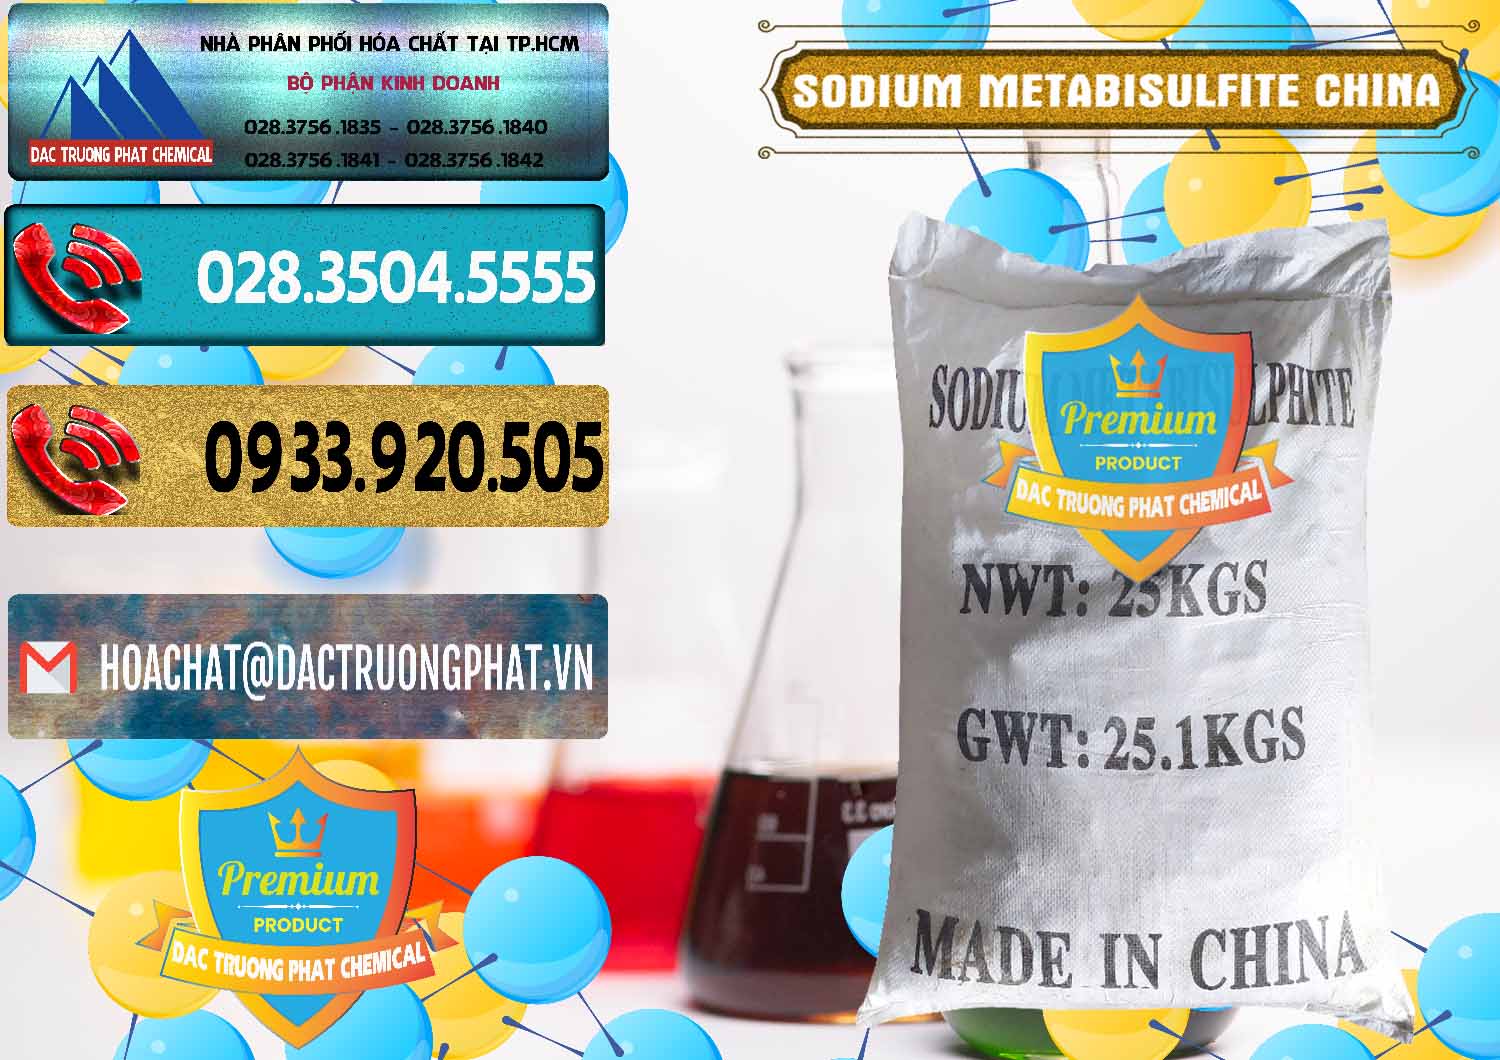 Nơi kinh doanh & bán Sodium Metabisulfite - NA2S2O5 Trung Quốc China - 0484 - Công ty chuyên nhập khẩu và phân phối hóa chất tại TP.HCM - hoachatdetnhuom.com